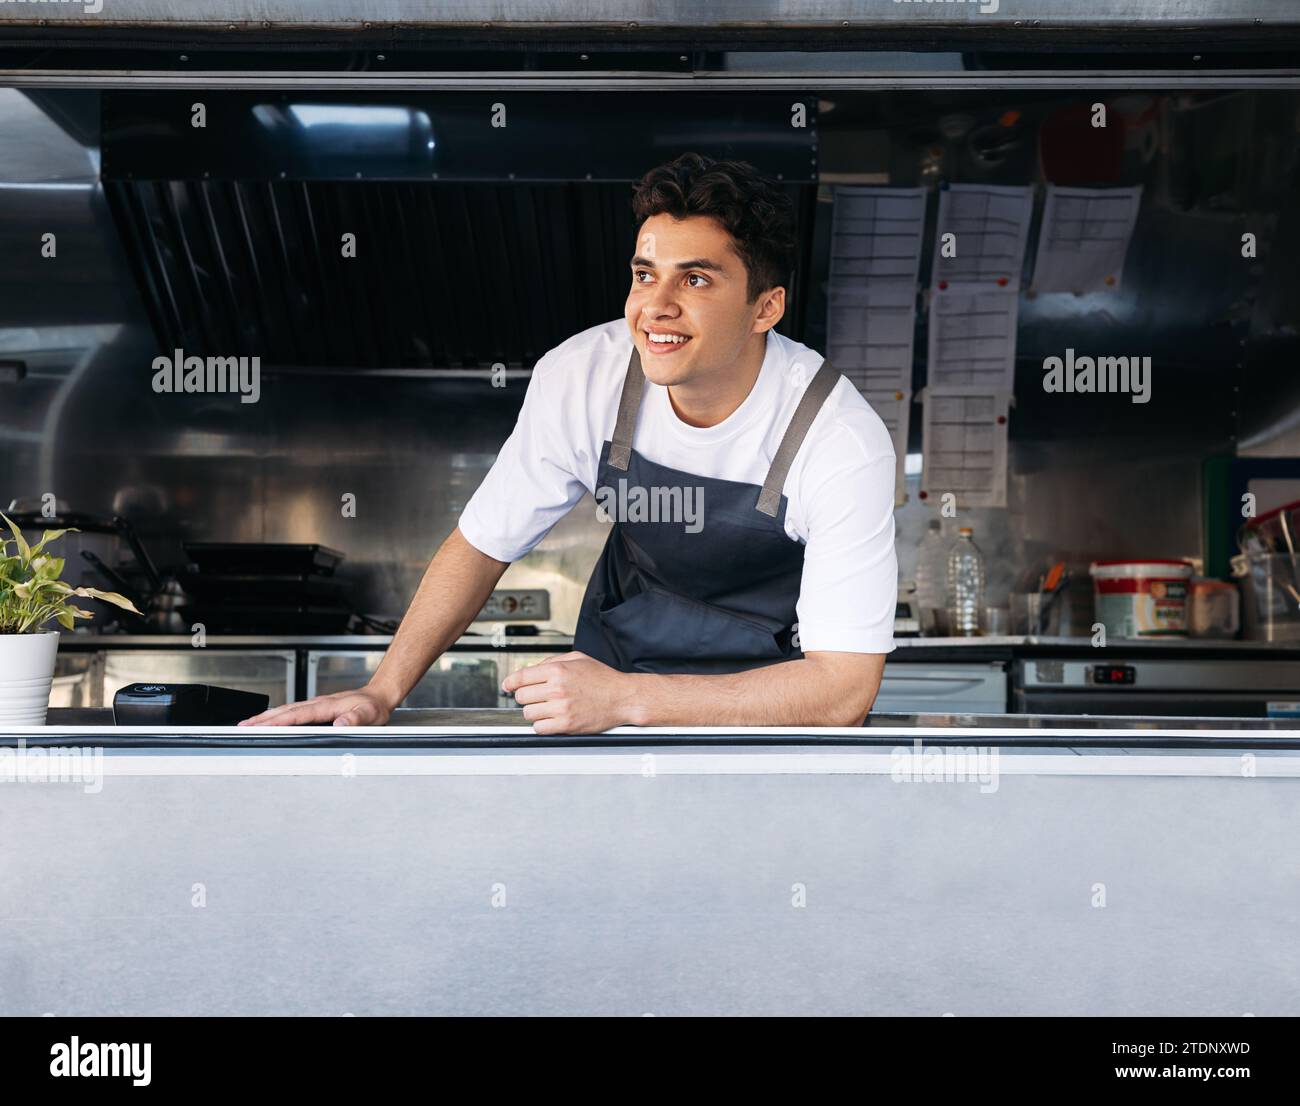 Porträt eines Imbisswagenbesitzers. Junger Mann, der als Koch in einem Imbisswagen arbeitet. Stockfoto